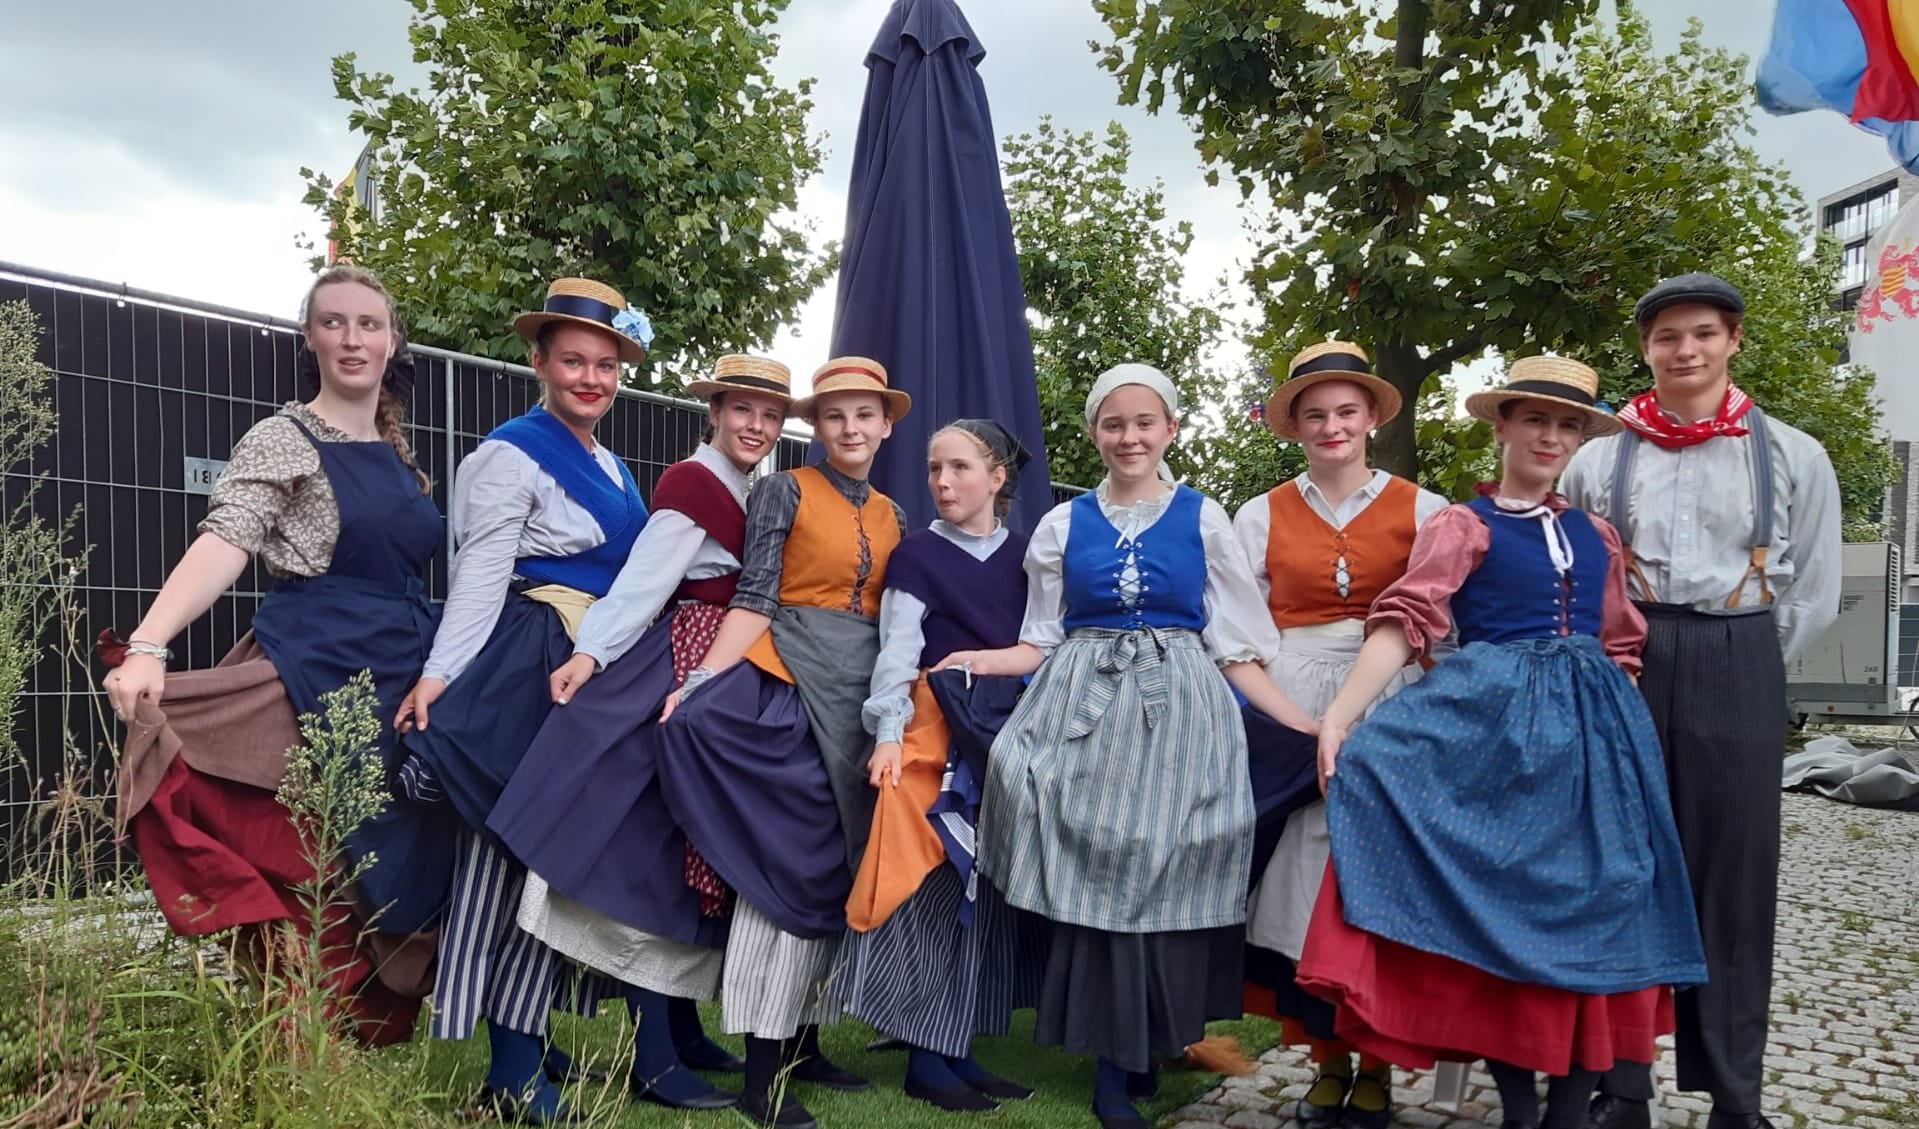 Tijdens de folkloremiddag zullen woensdag 9 augustus onder meer de Boezeroenen (tiener/jeugd demogroep) uit het Belgische Hasselt optreden. Foto: PR